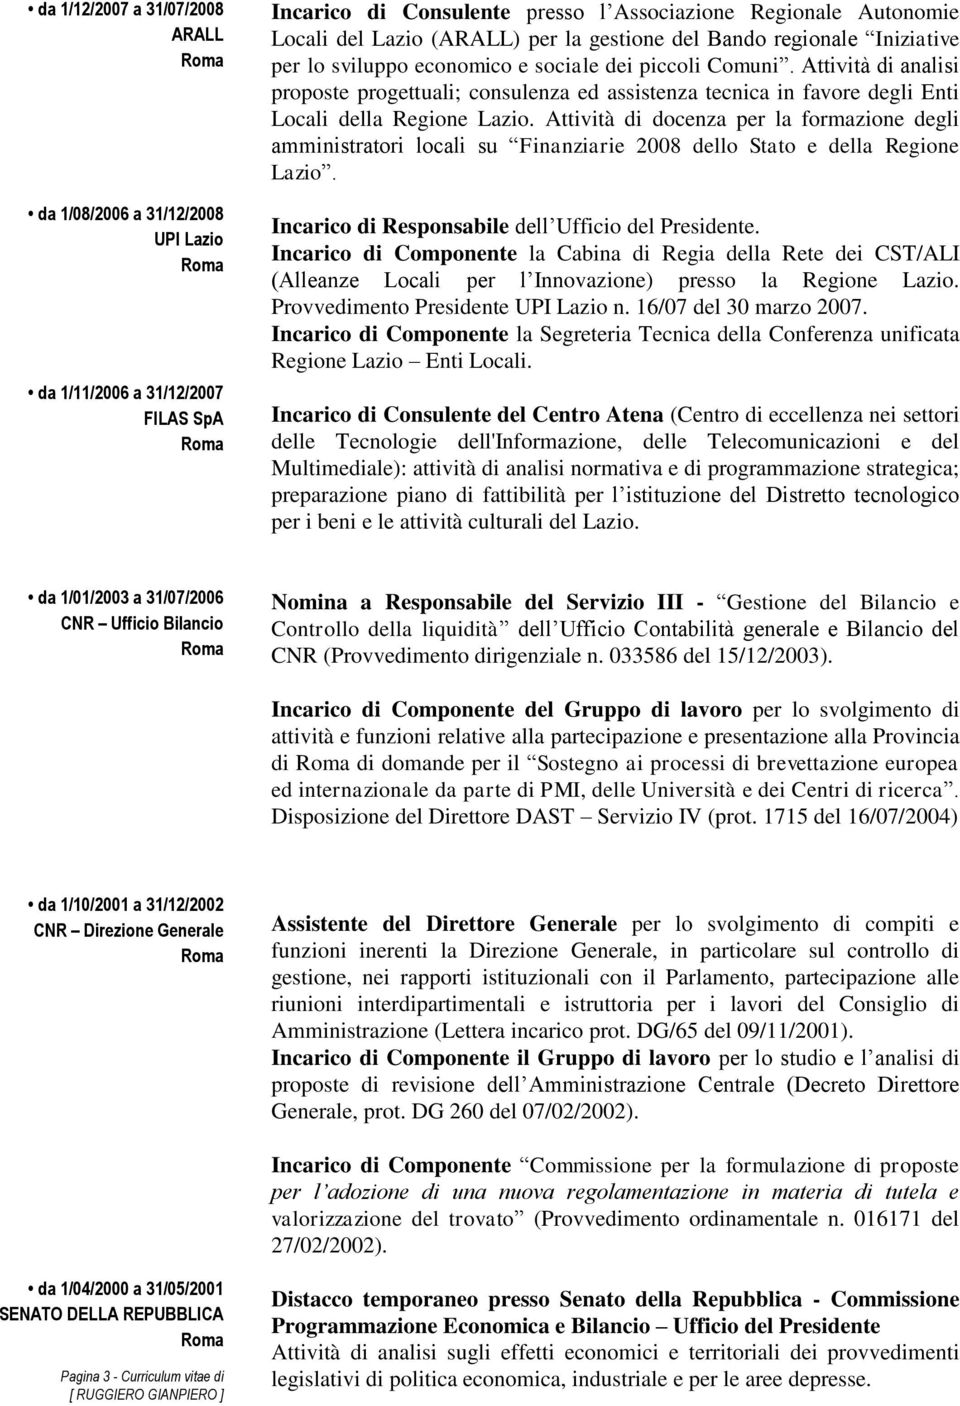 Attività di analisi proposte progettuali; consulenza ed assistenza tecnica in favore degli Enti Locali della Regione Lazio.